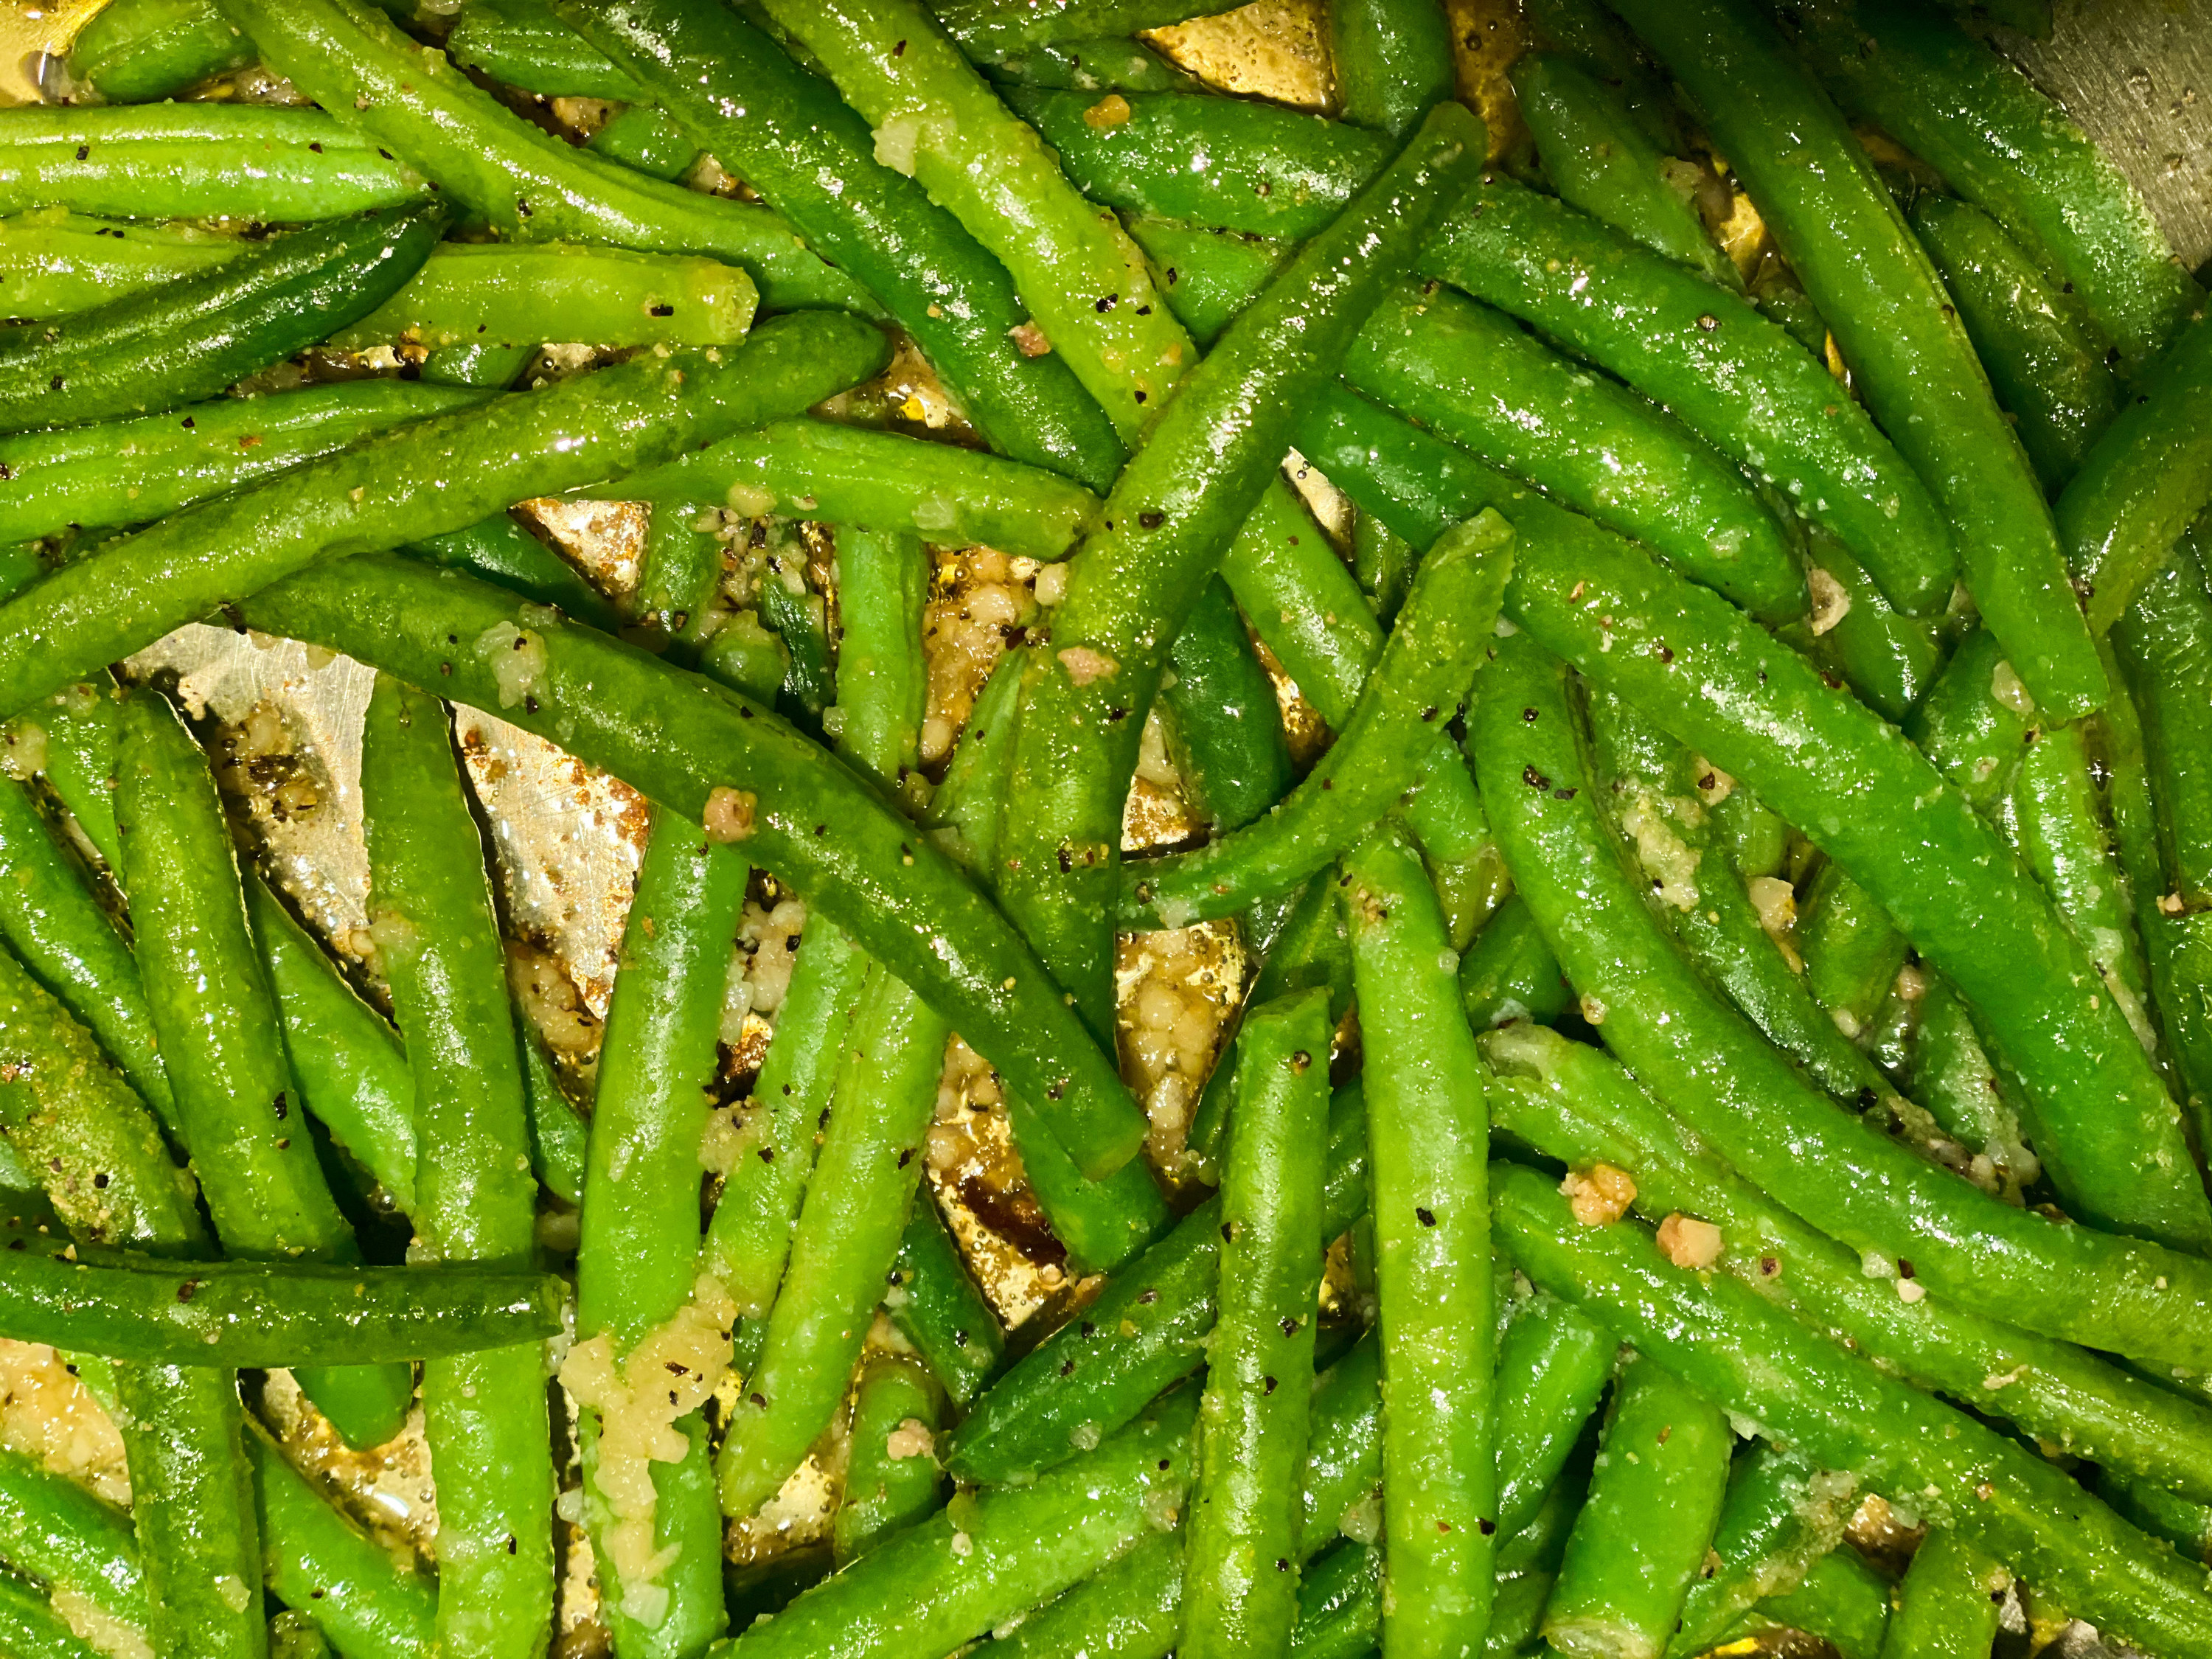 Sautéed green beans